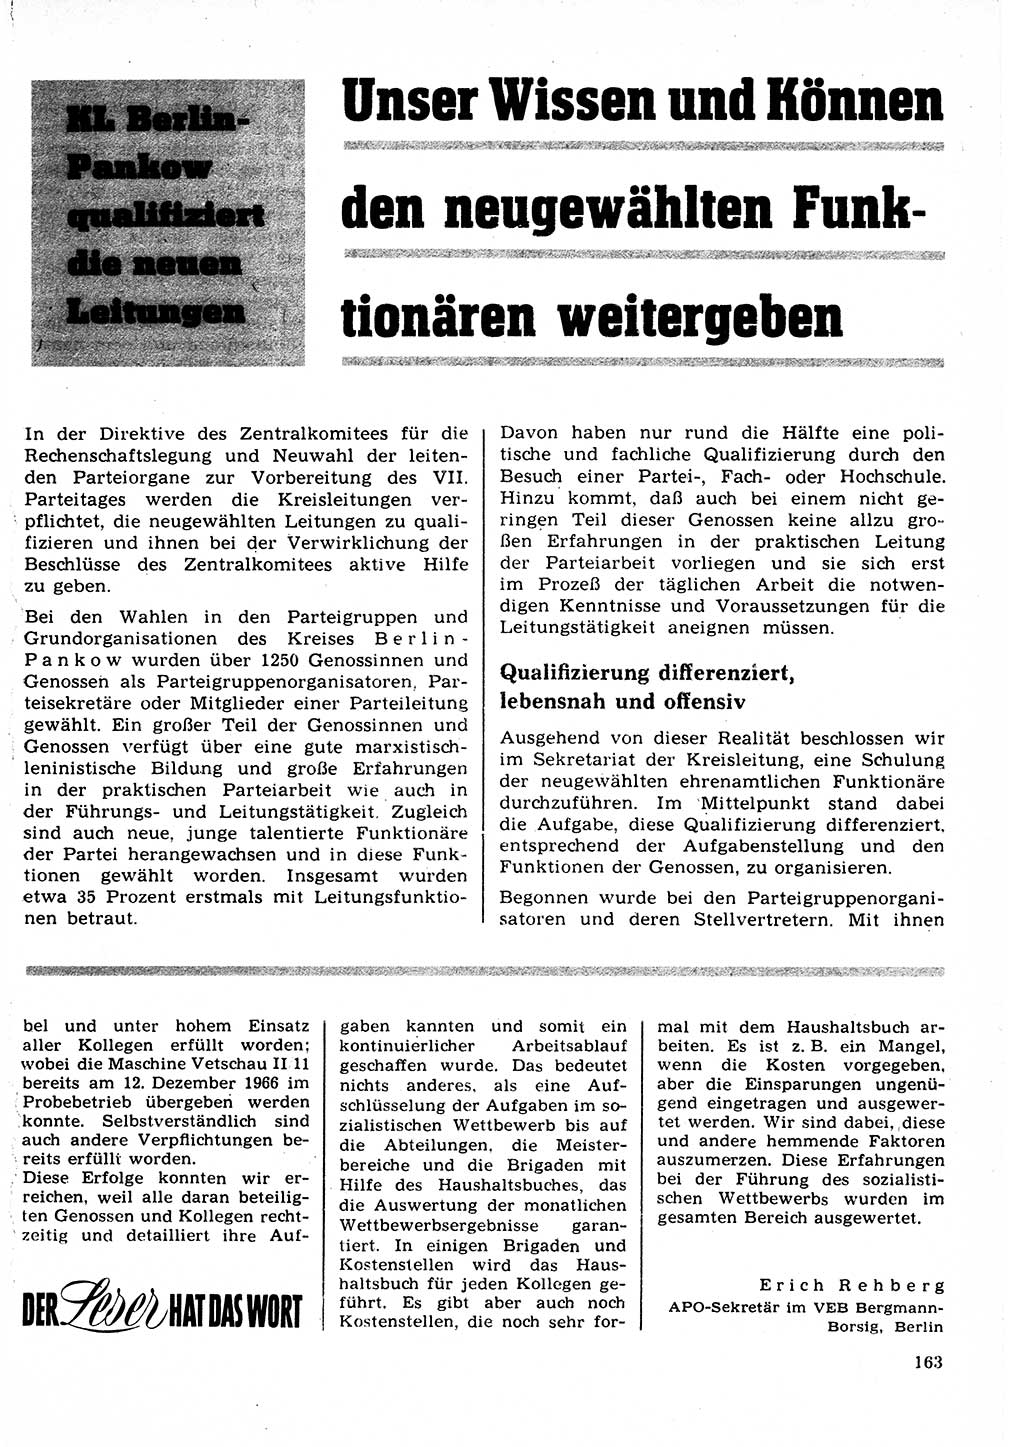 Neuer Weg (NW), Organ des Zentralkomitees (ZK) der SED (Sozialistische Einheitspartei Deutschlands) für Fragen des Parteilebens, 22. Jahrgang [Deutsche Demokratische Republik (DDR)] 1967, Seite 163 (NW ZK SED DDR 1967, S. 163)